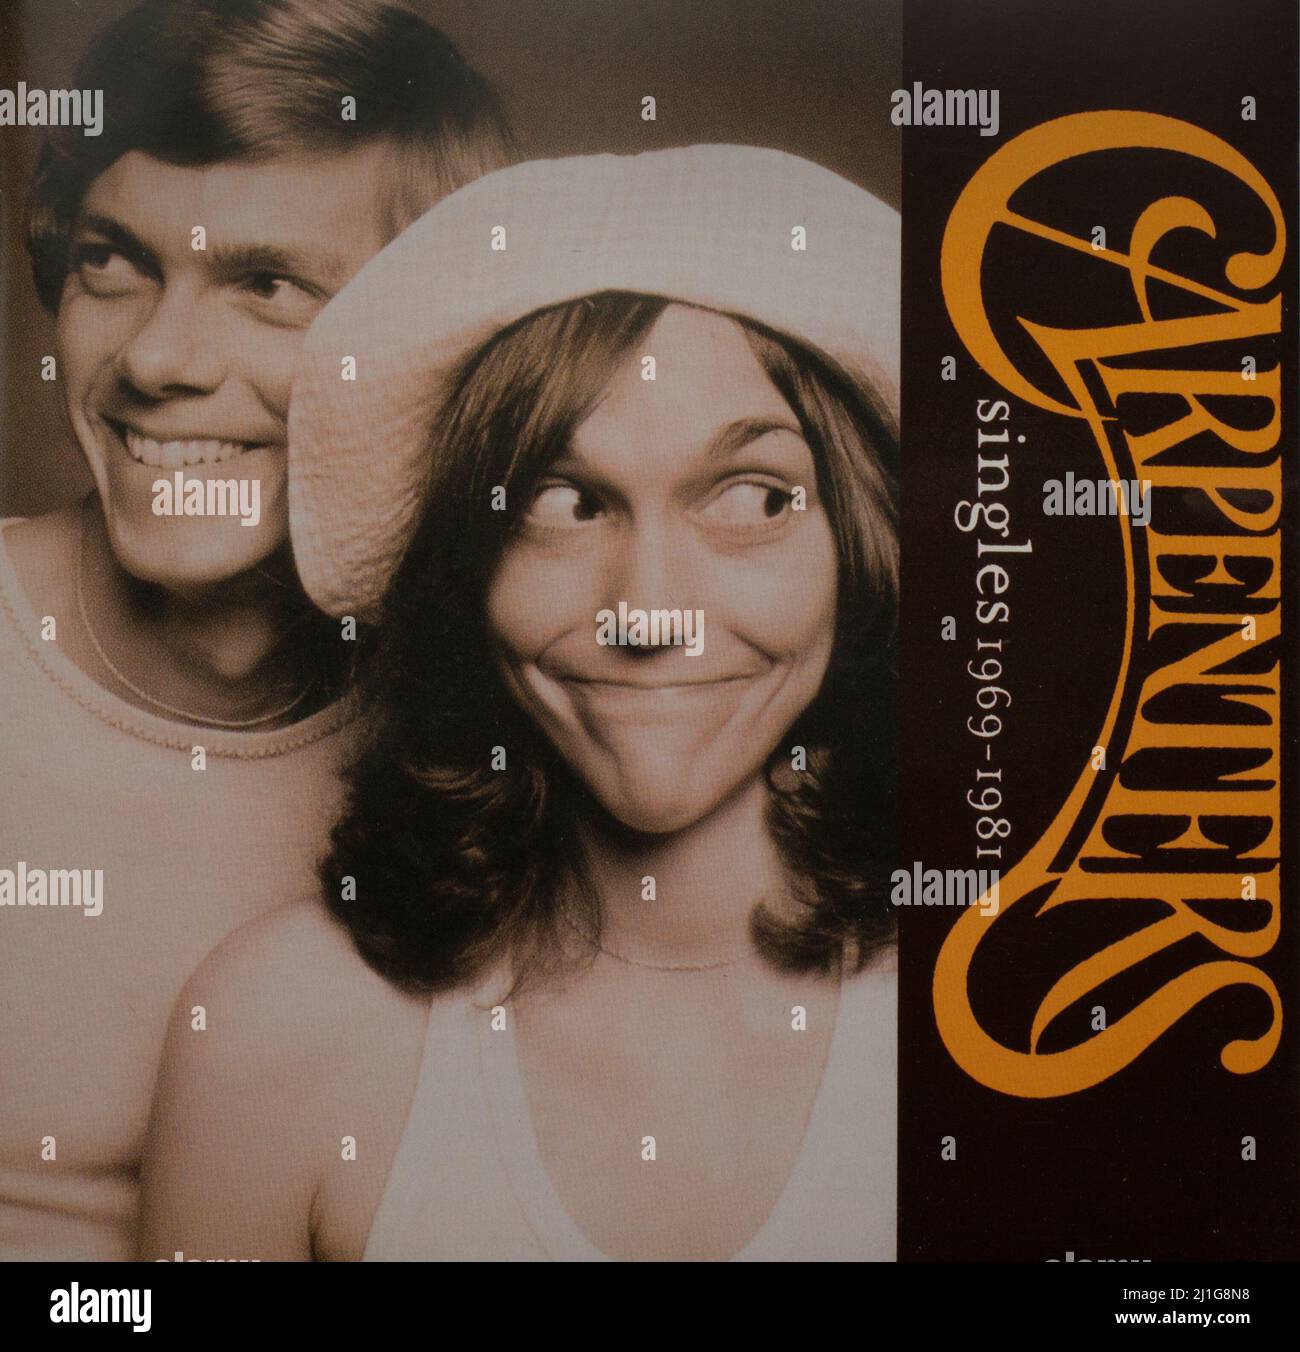 El álbum de CD Cover to Singles 1969 - 1981 de The Carpinters Foto de stock